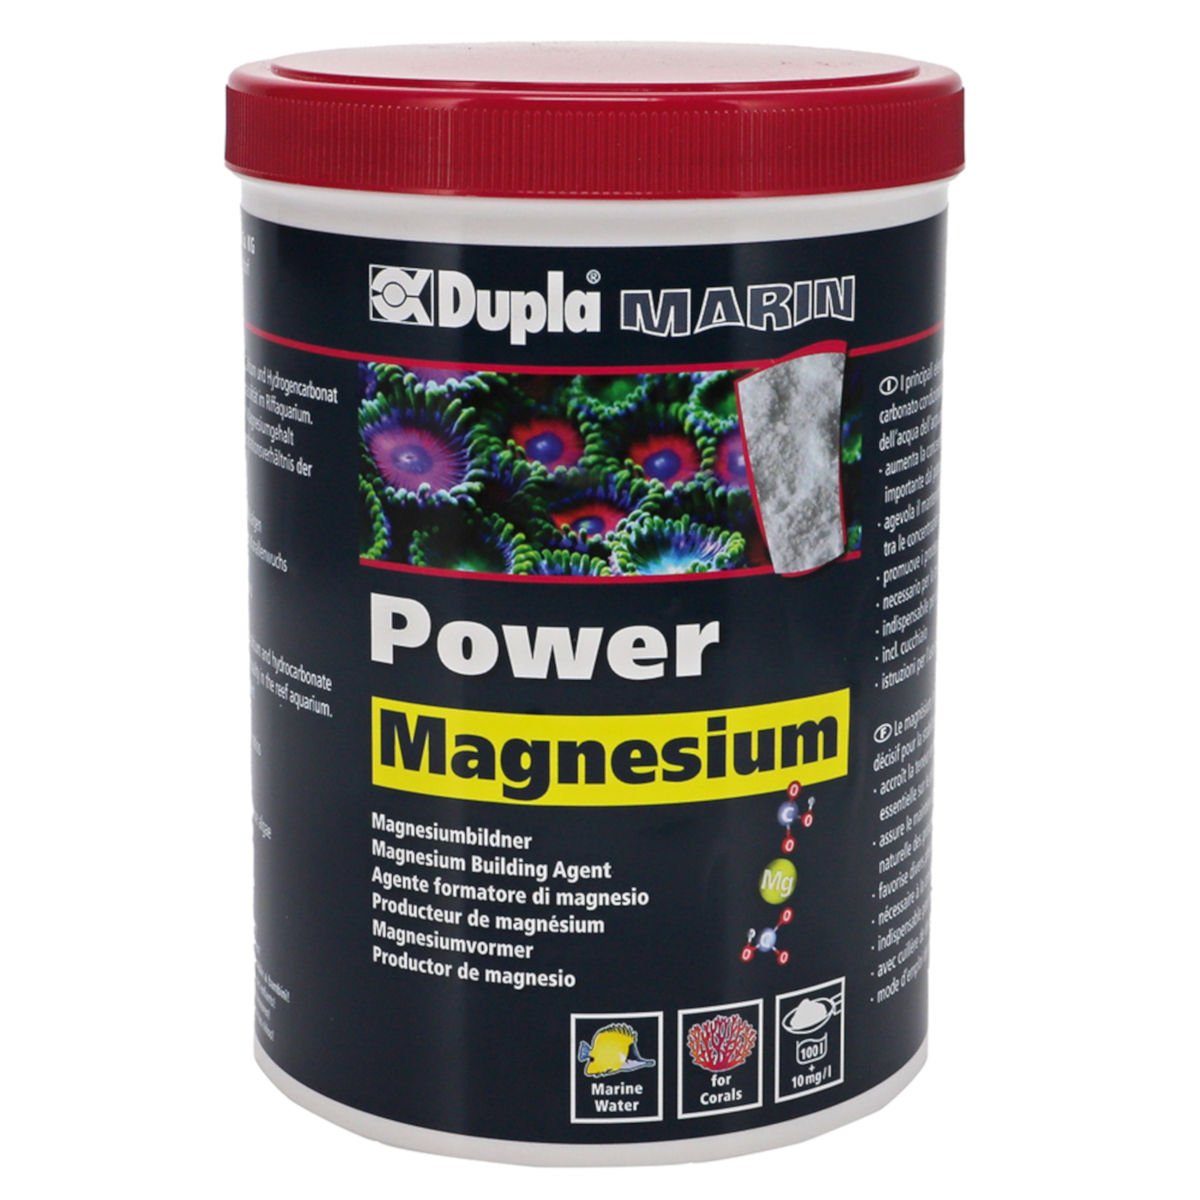 Dupla Marin Aquariumpflege Power Magnesium - 800 g